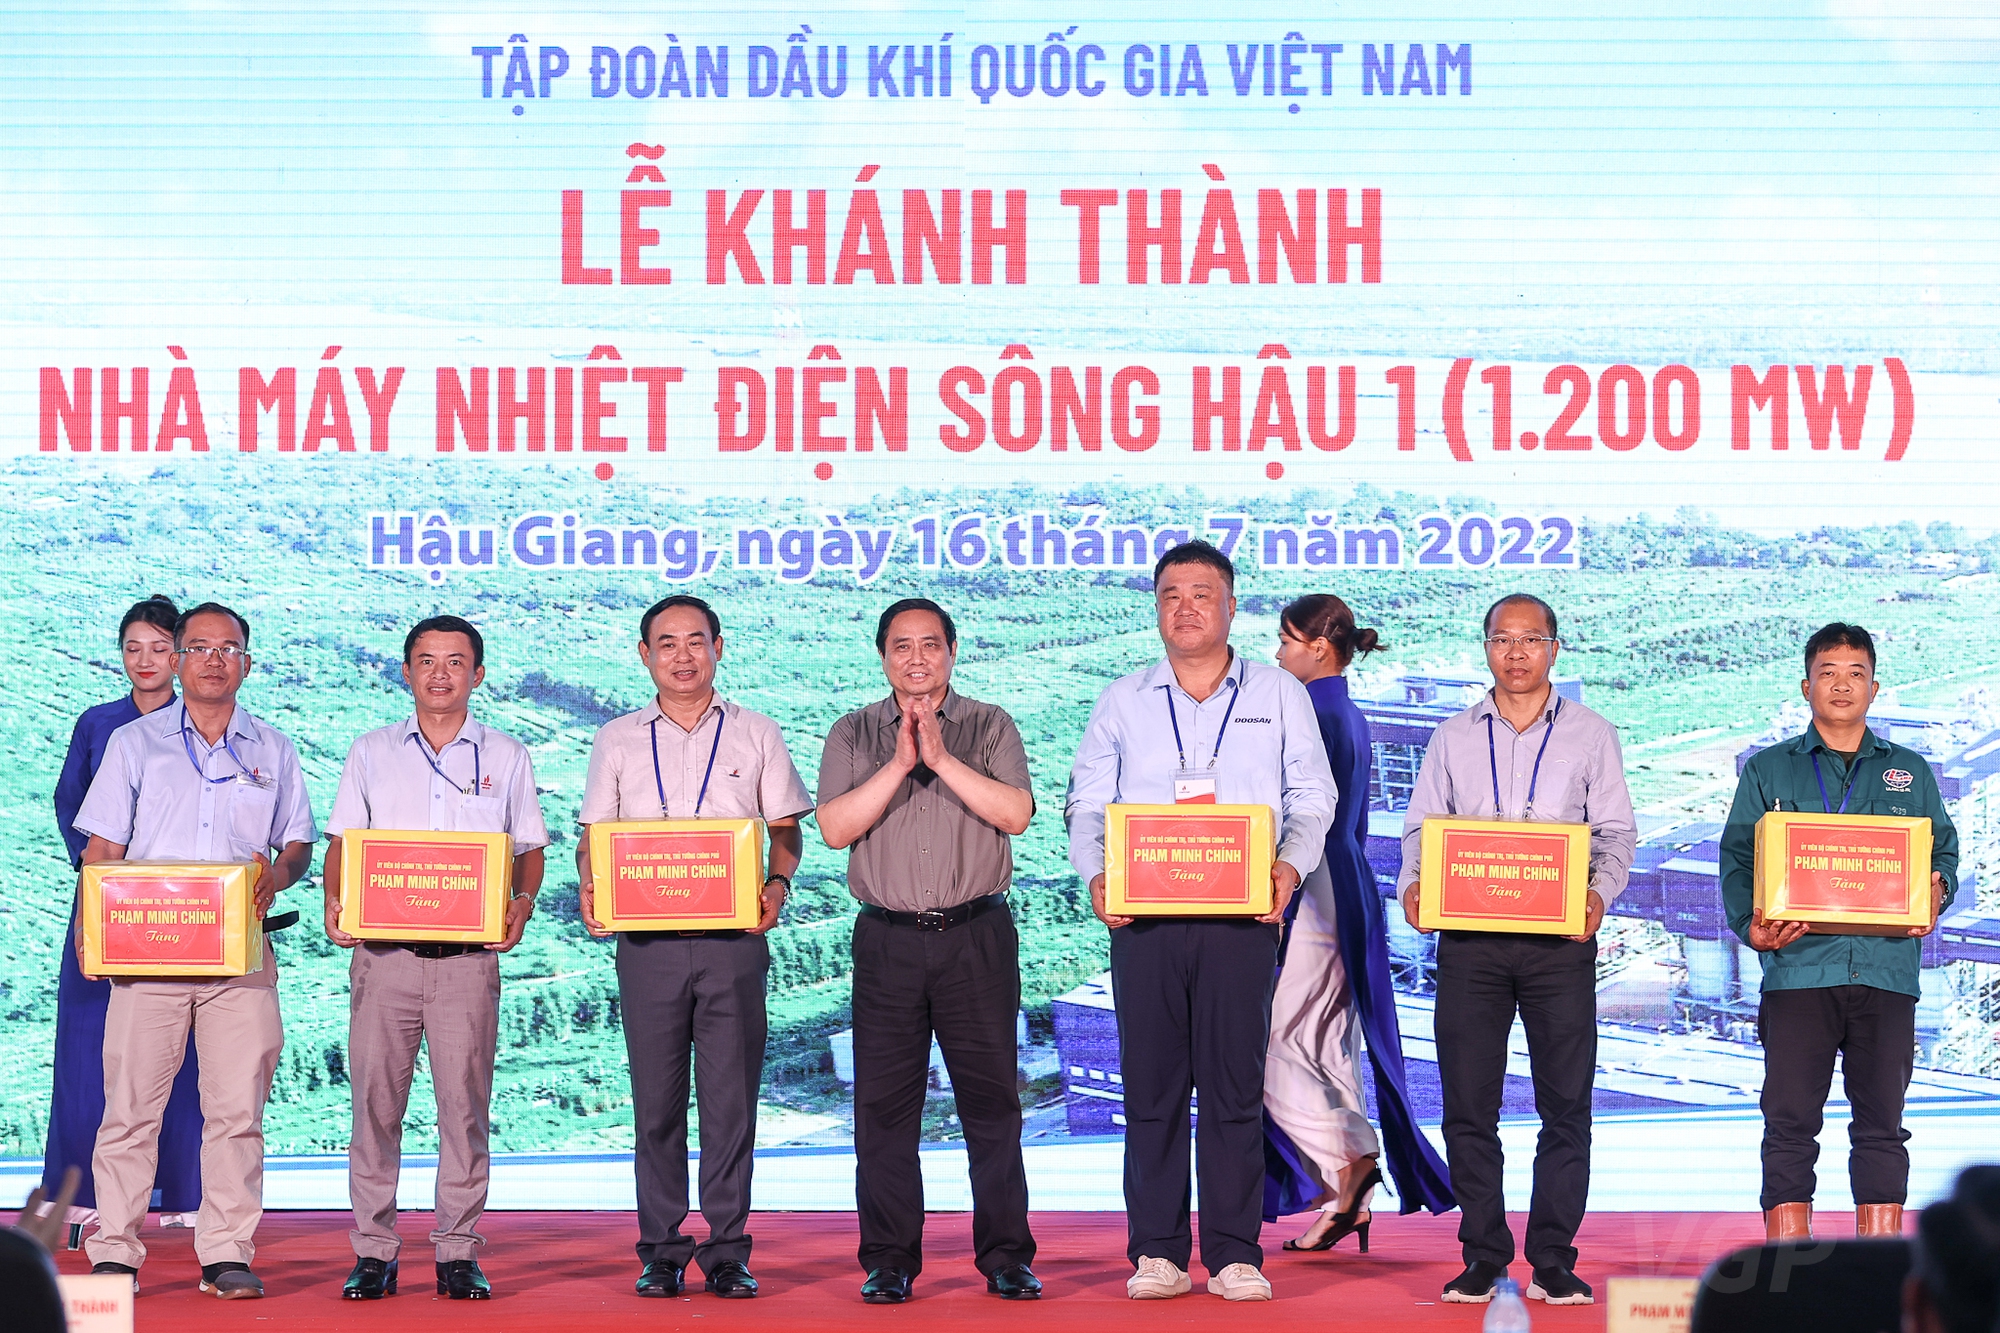 Thủ tướng dự lễ khánh thành nhà máy nhiệt điện Sông Hậu 1, thúc đẩy tiến độ hai tuyến cao tốc